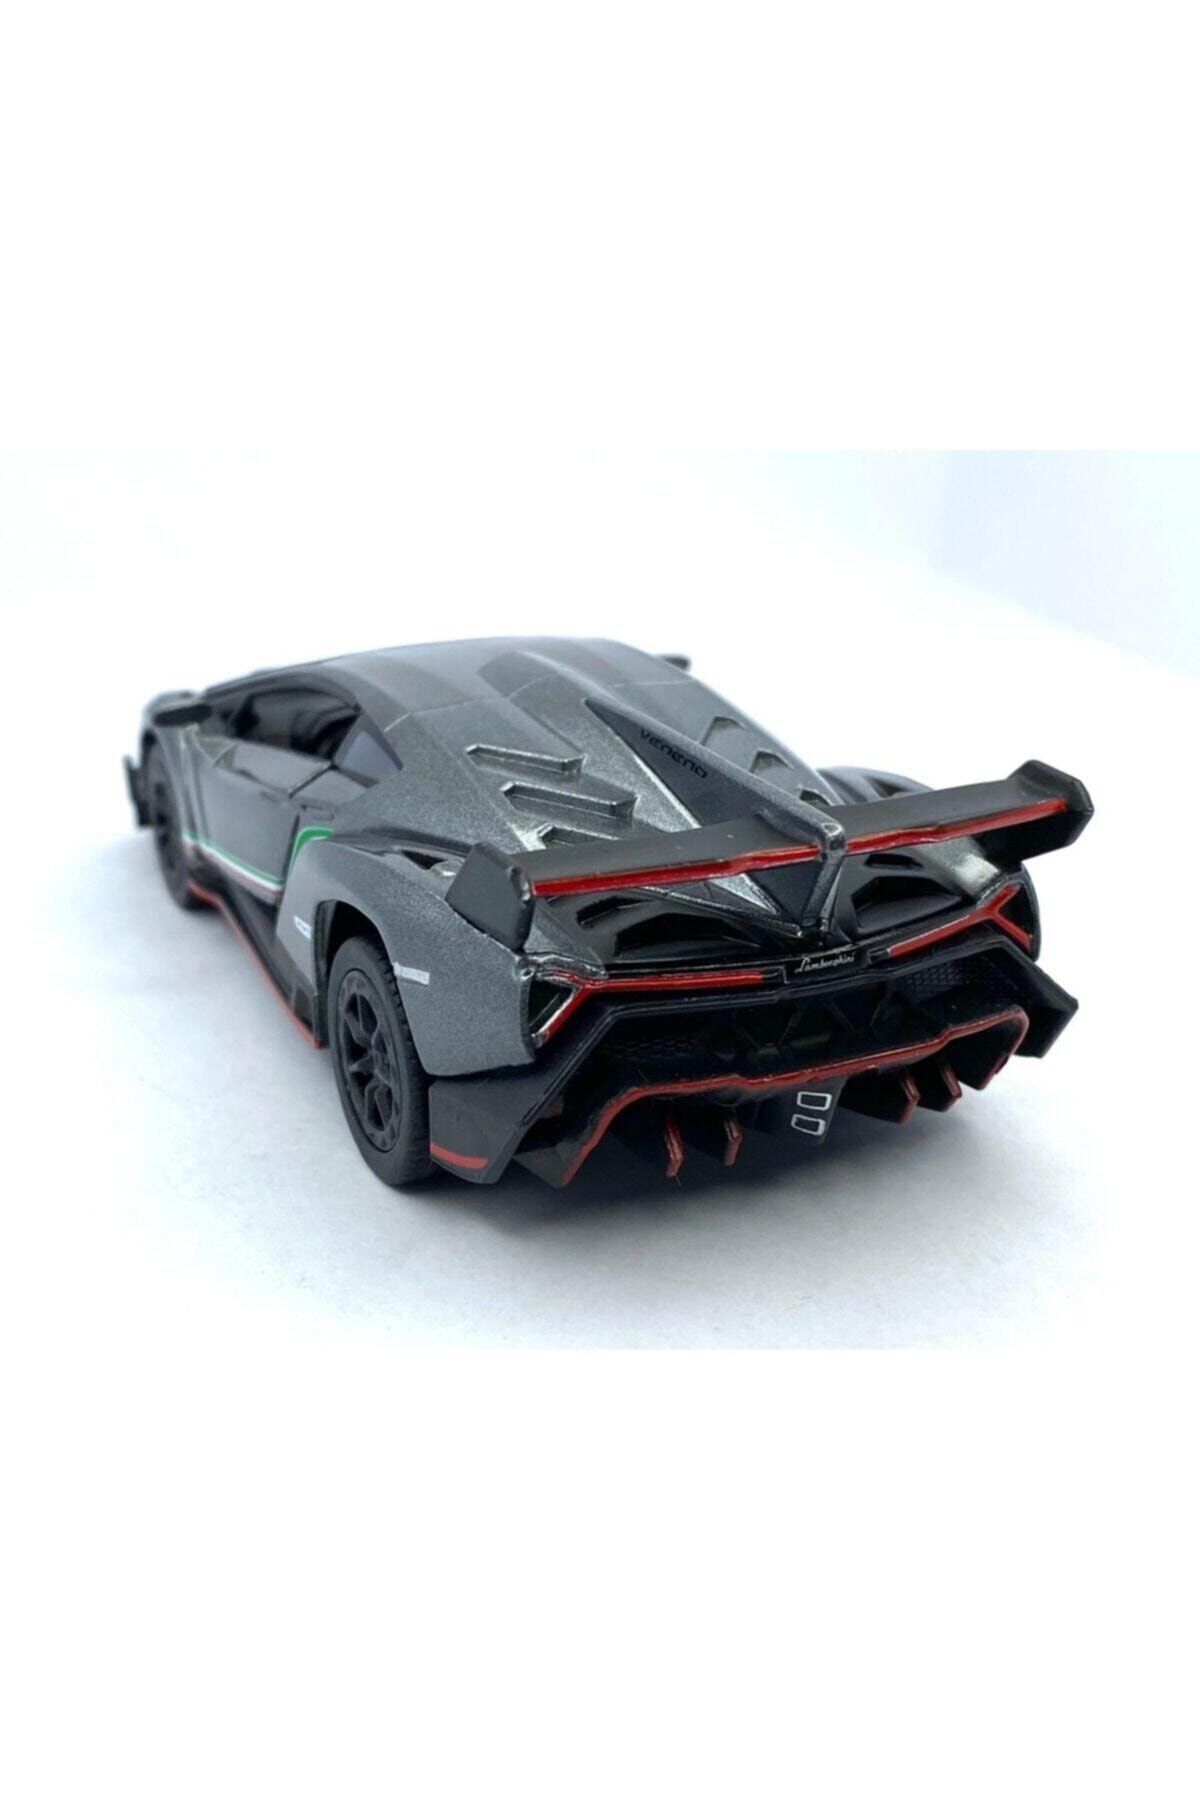 Kinsmart Lamborghini Veneno Çek Bırak 5inch. Lisanslı Model Araba, Oyuncak Araba 1:36